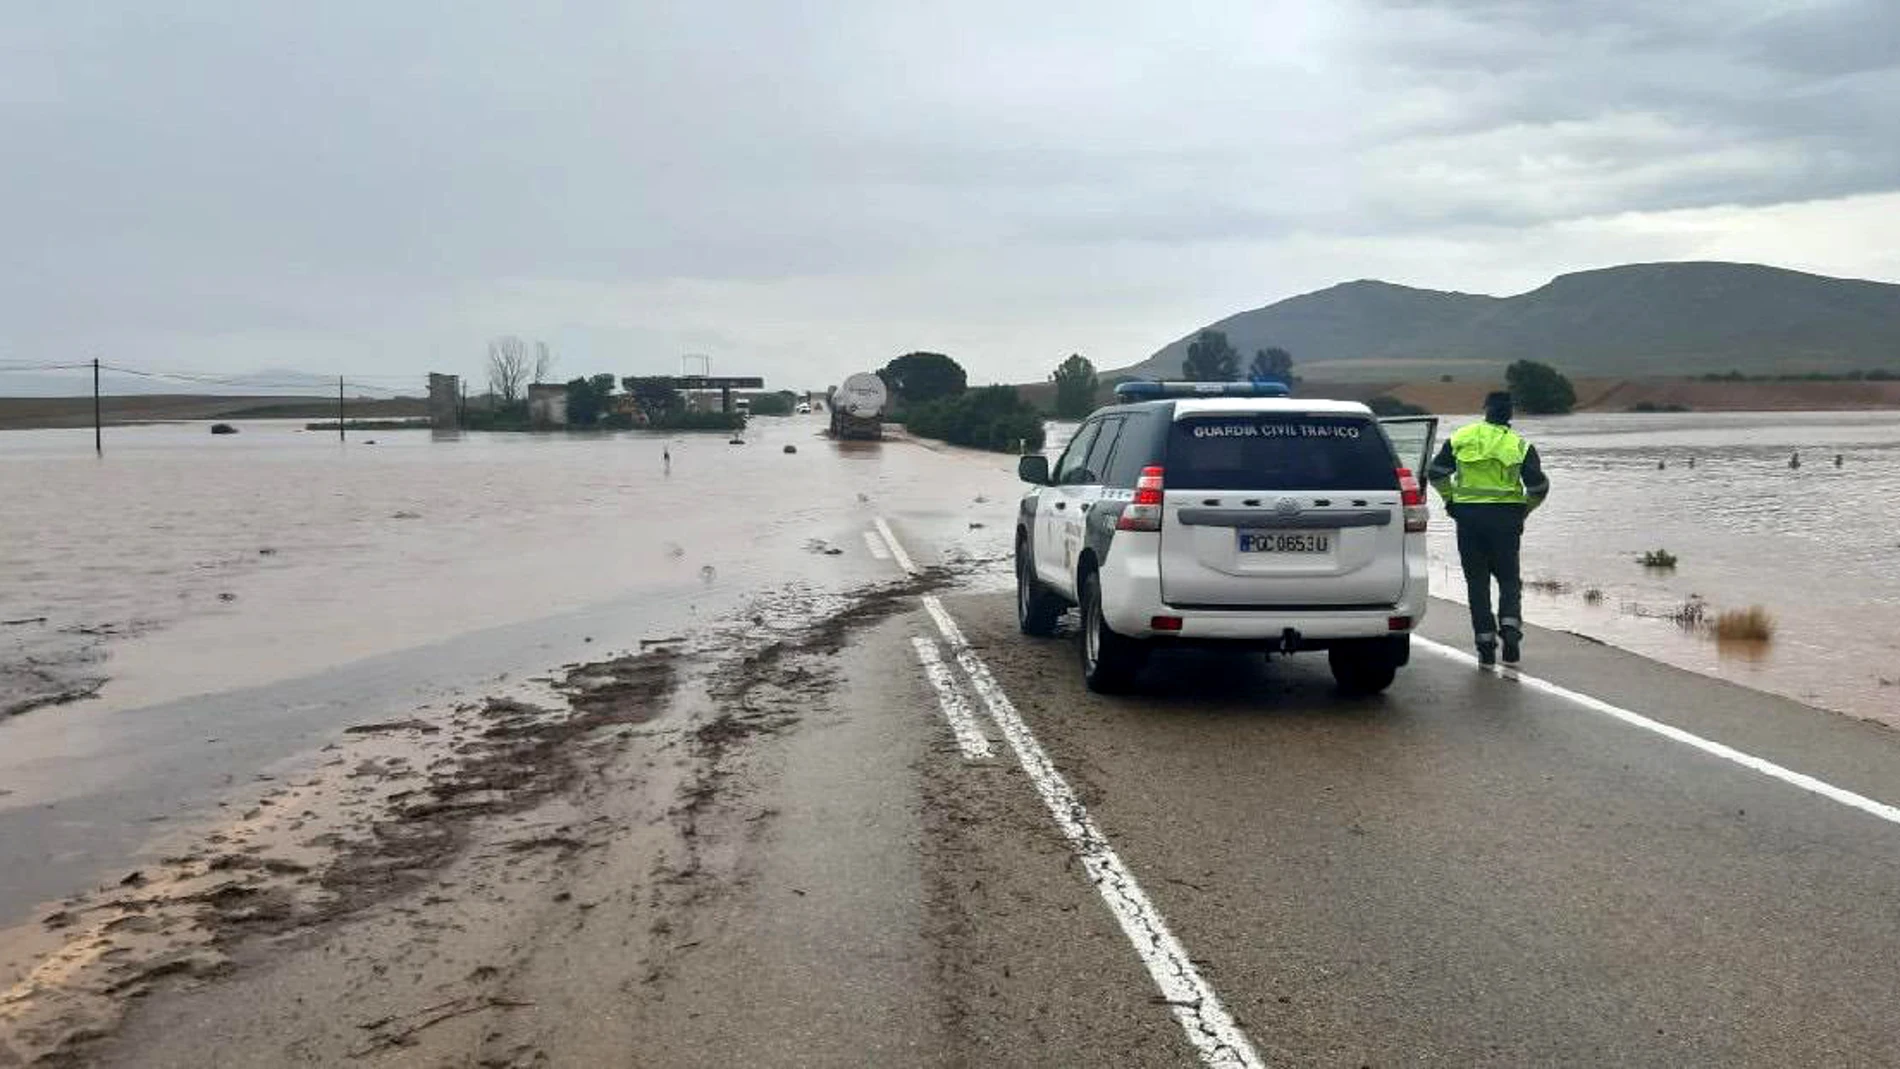 Carretera cortada por las inundaciones en el término municipal de Almenar (Soria)